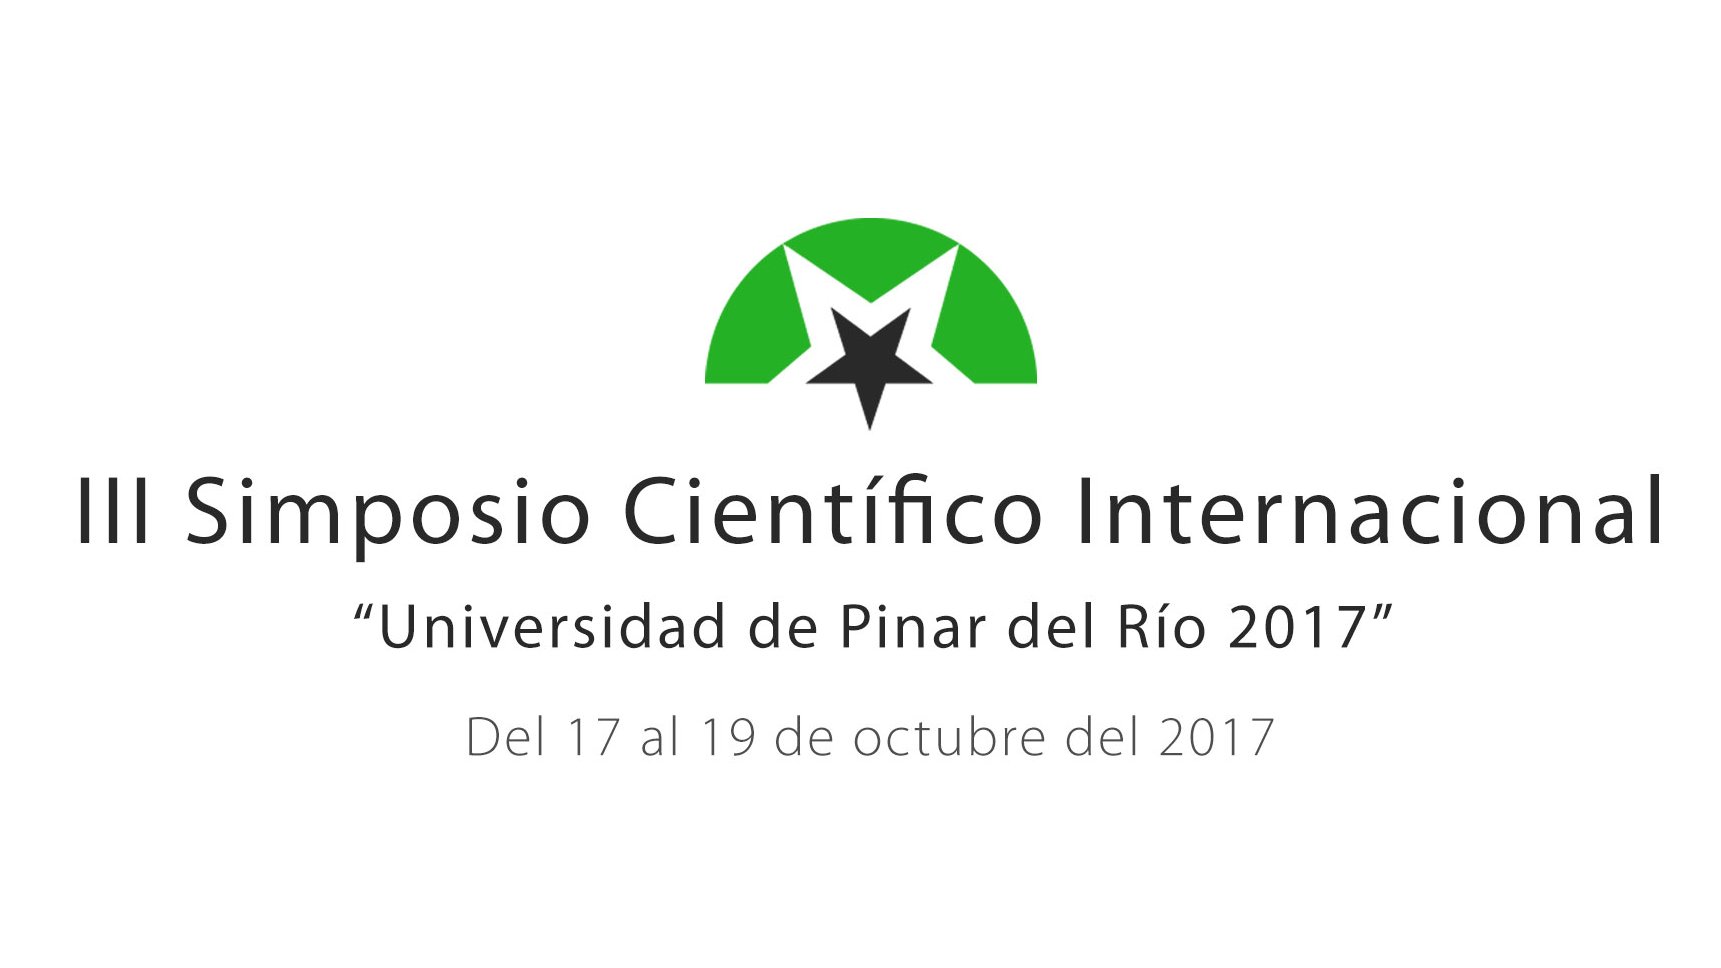 Universidad de Pinar del Río